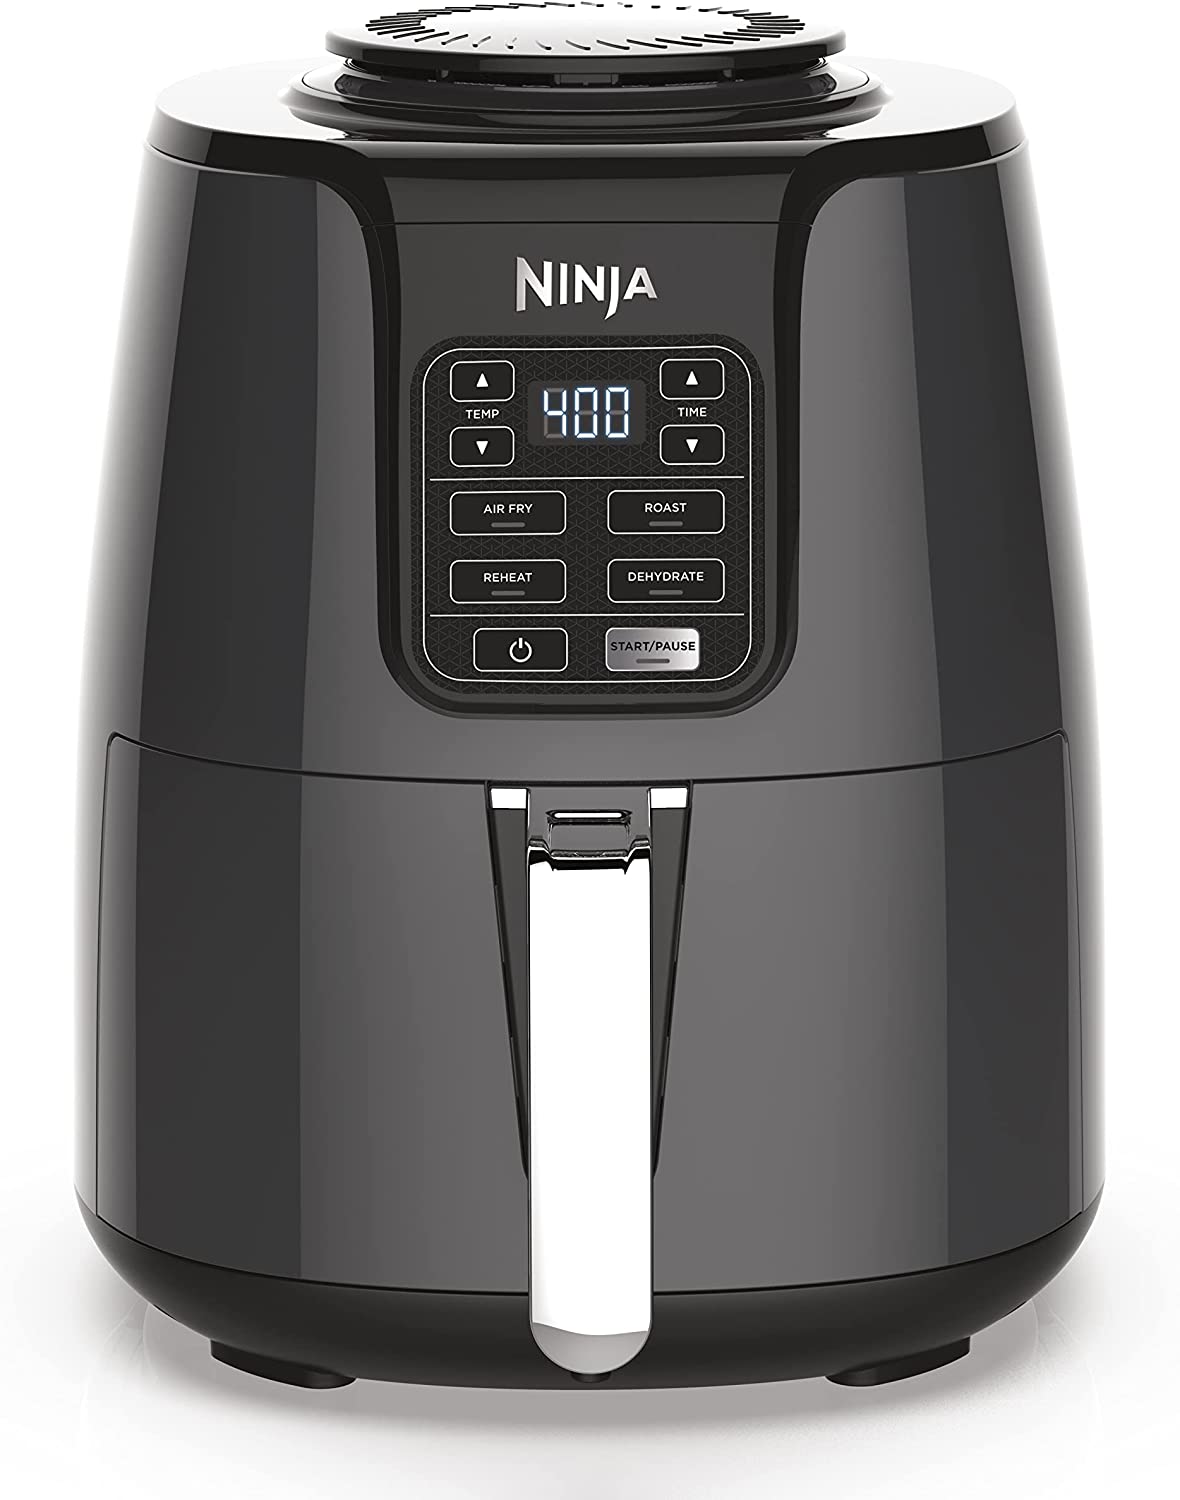 Ninja Air Fryer AF100 Overview